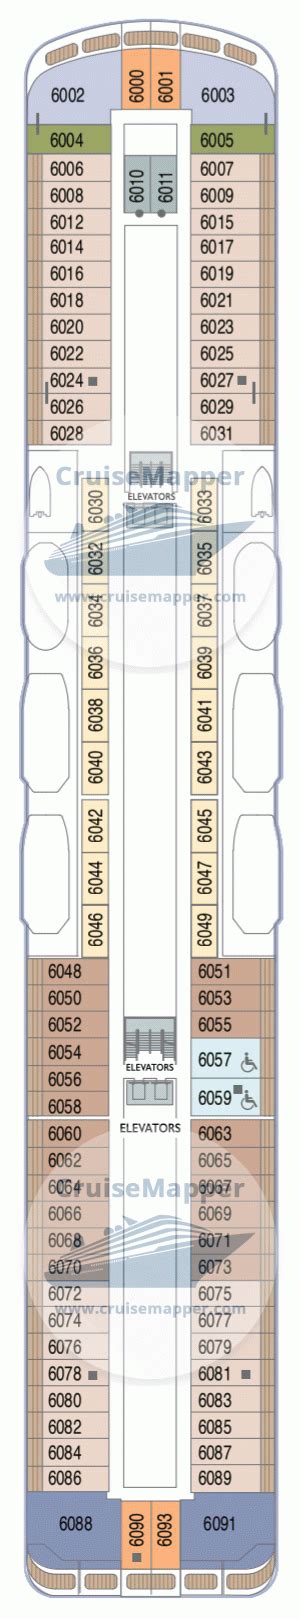 Azamara journey deck plan, azamara journey deck layout. Azamara Journey deck 6 plan | CruiseMapper